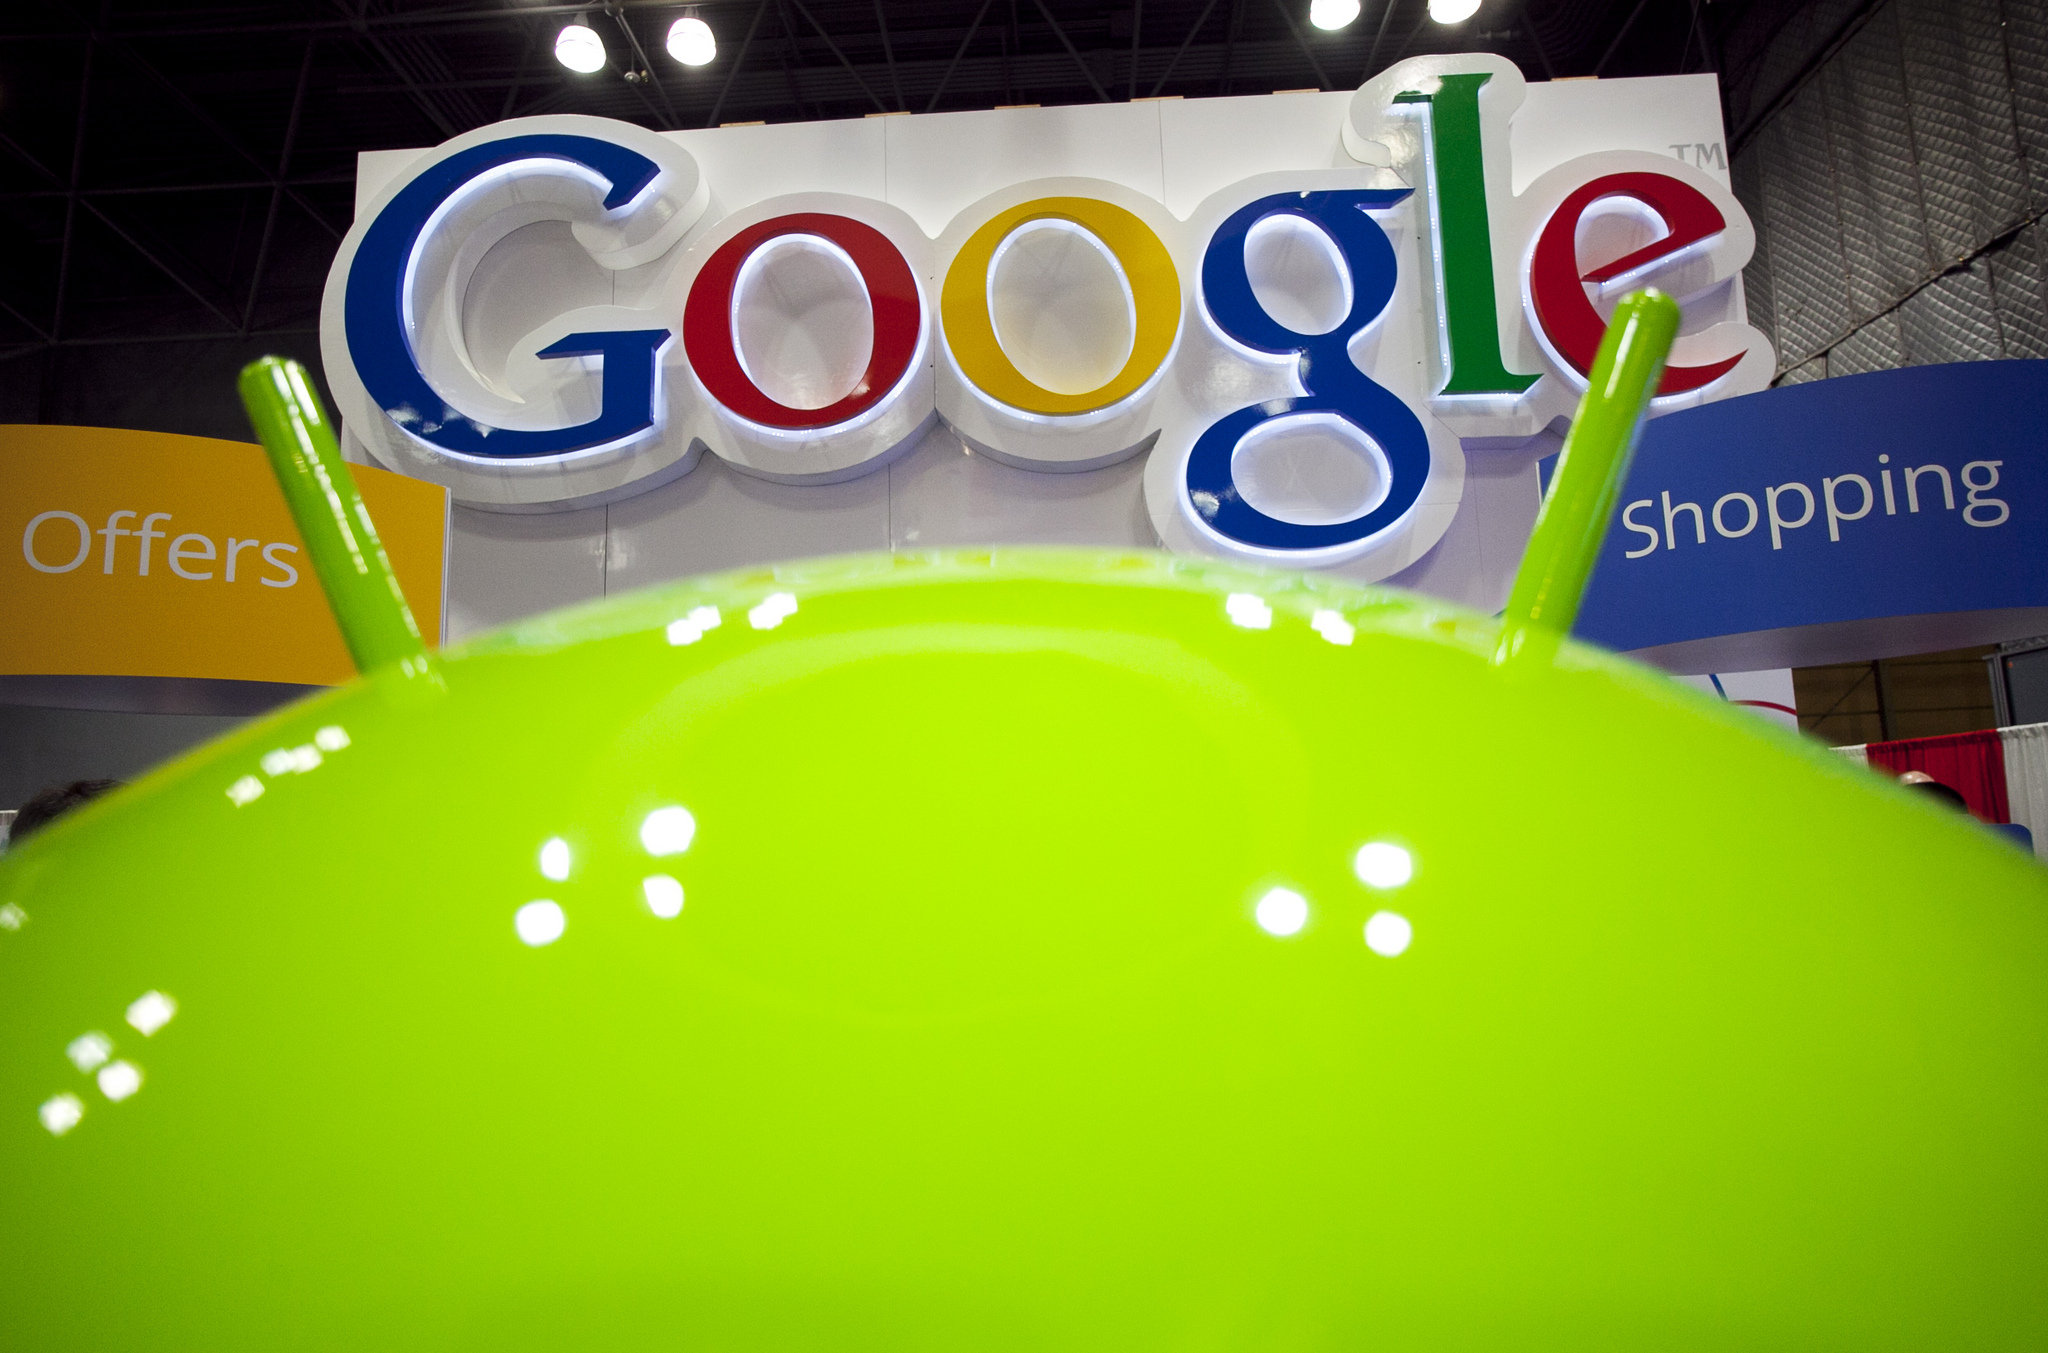 Vormen gratis Google producten een bedreiging voor je online inkomsten?